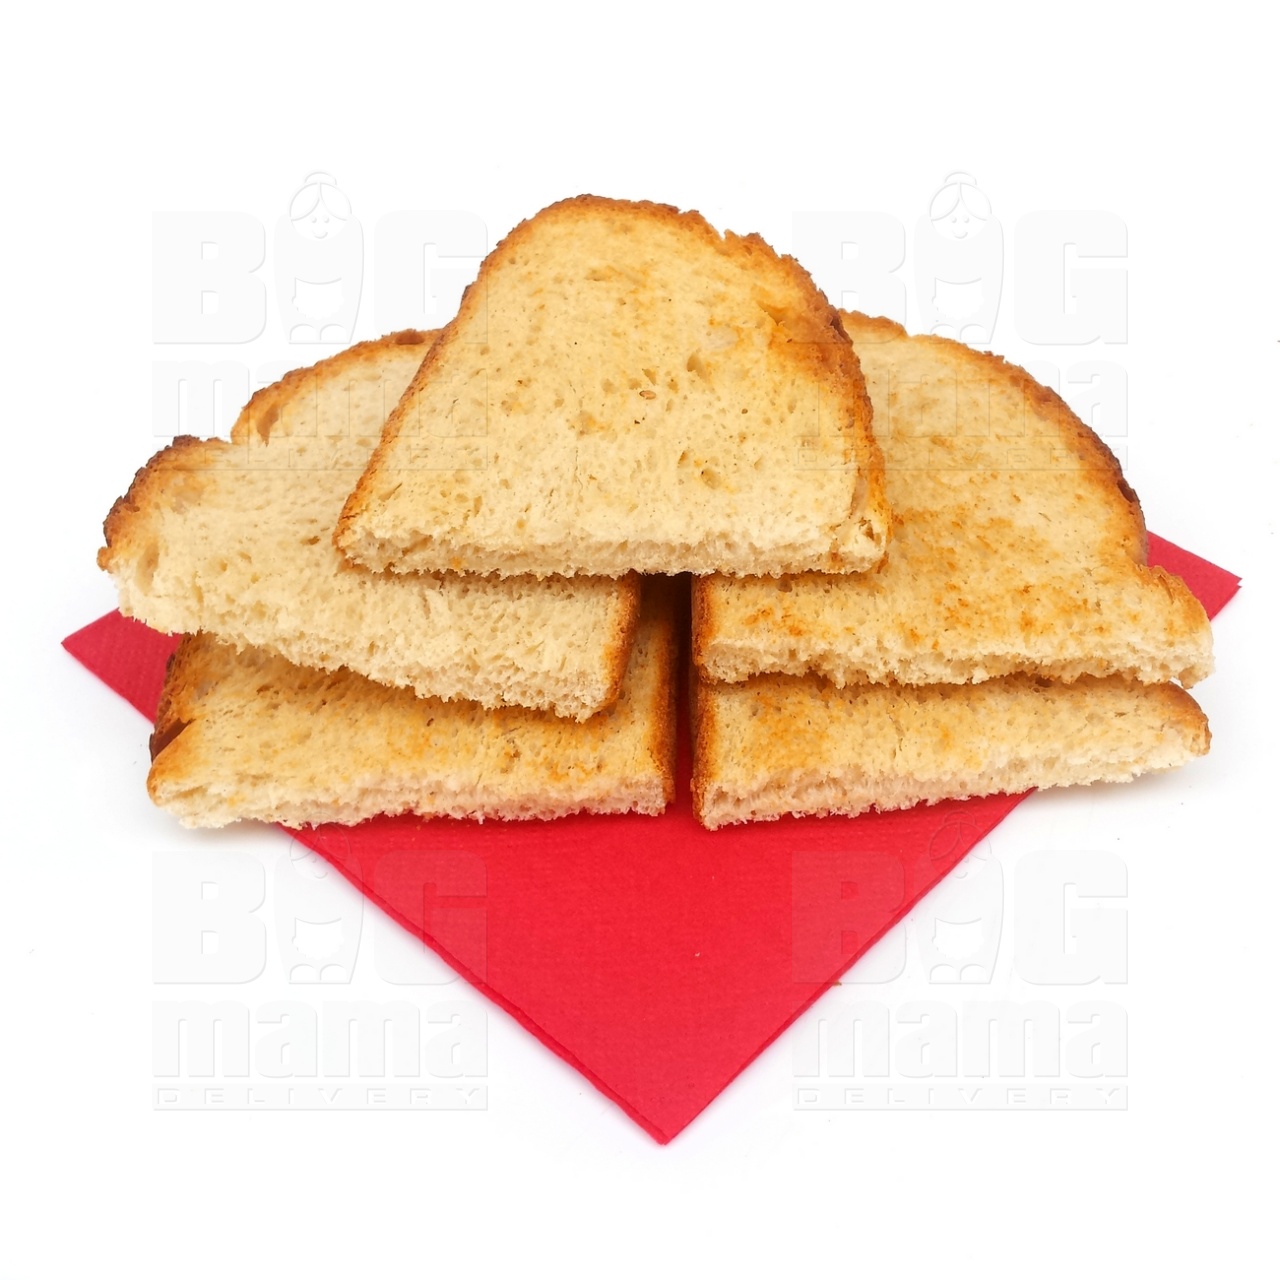 Product #164 image - Pâine prăjită